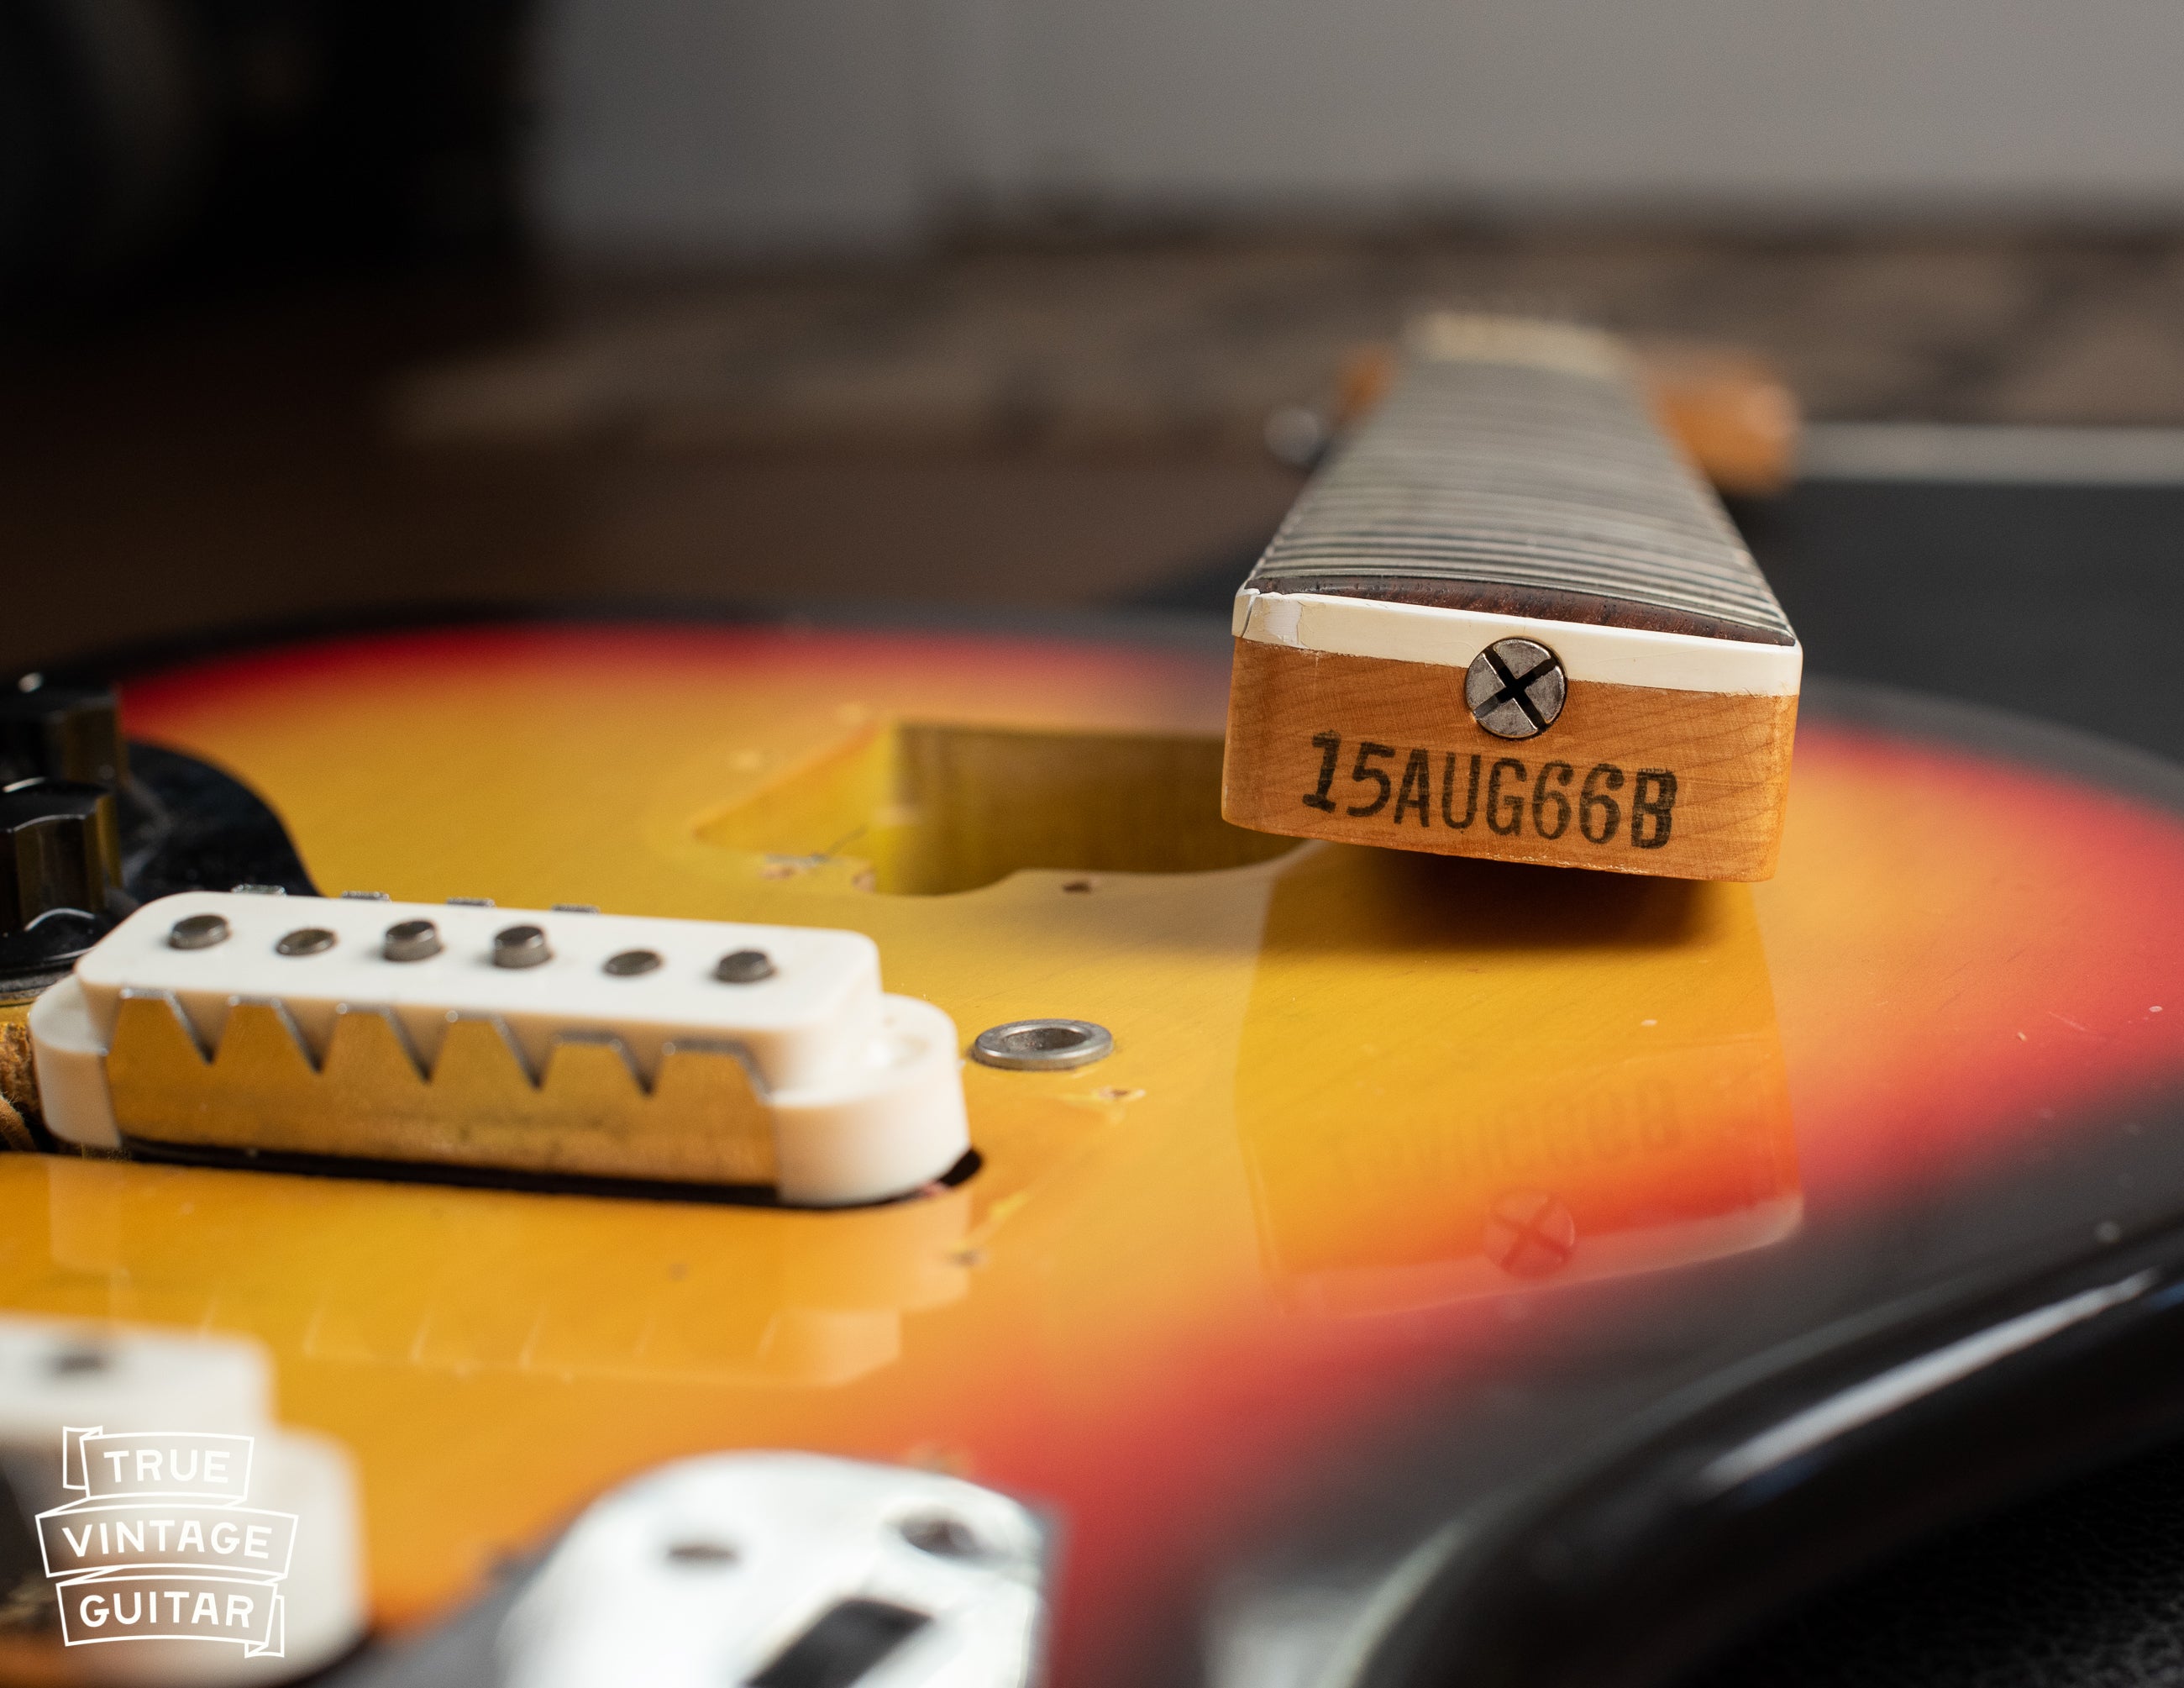 Neck heel date stamp, vintage 1966 Fender guitar, 15AUG66B